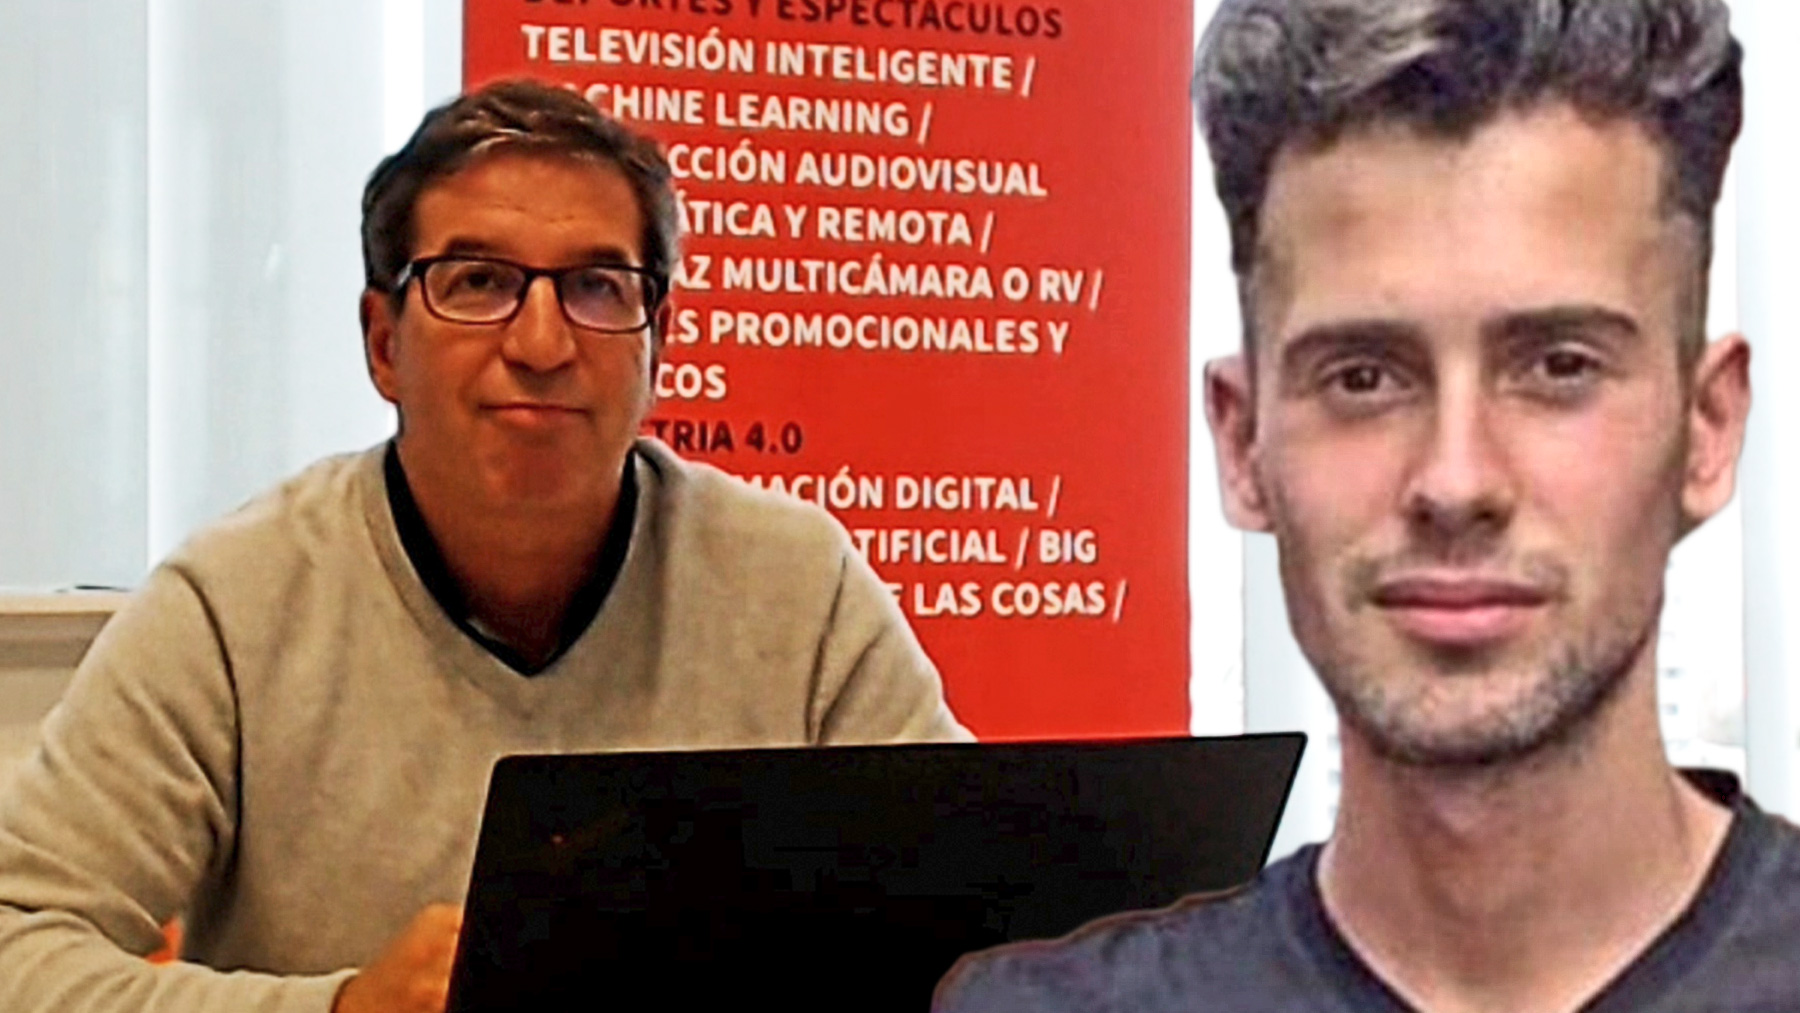 Antonio del Corral, CEO de Cinfo, junto a una imagen de Samuel.